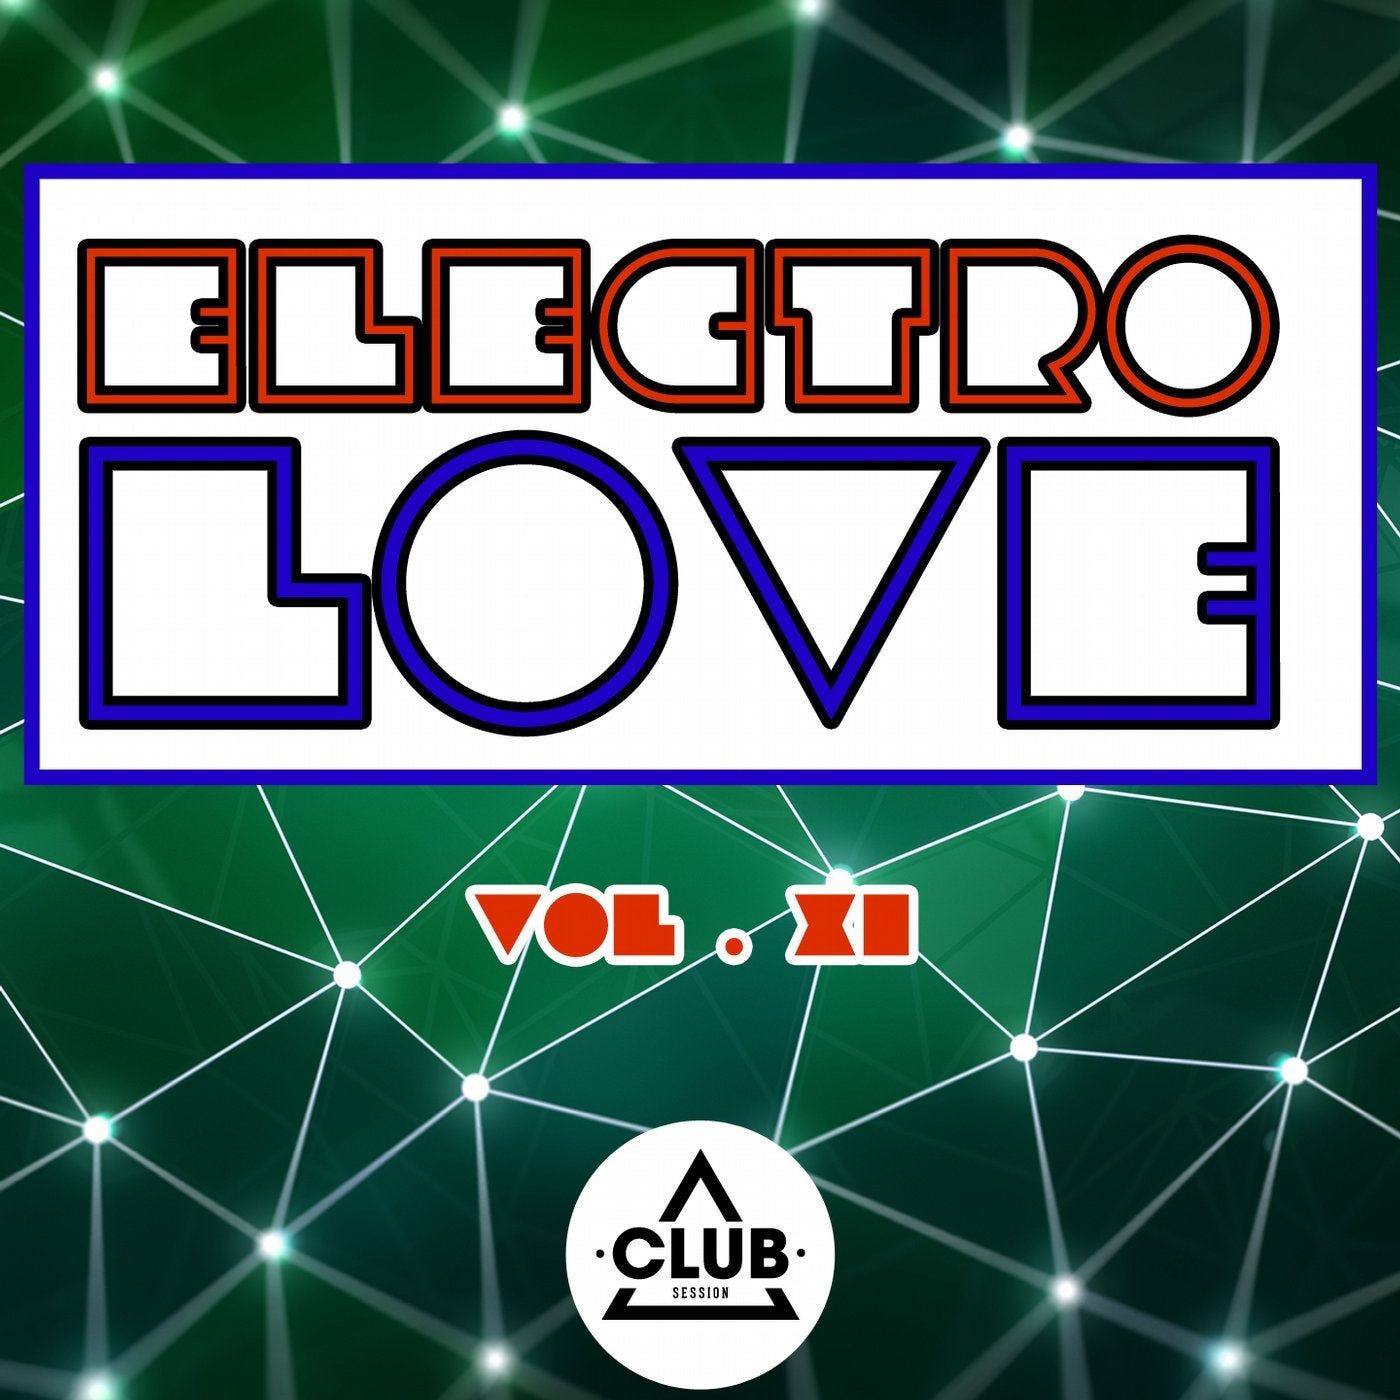 Electro Love Vol. 11